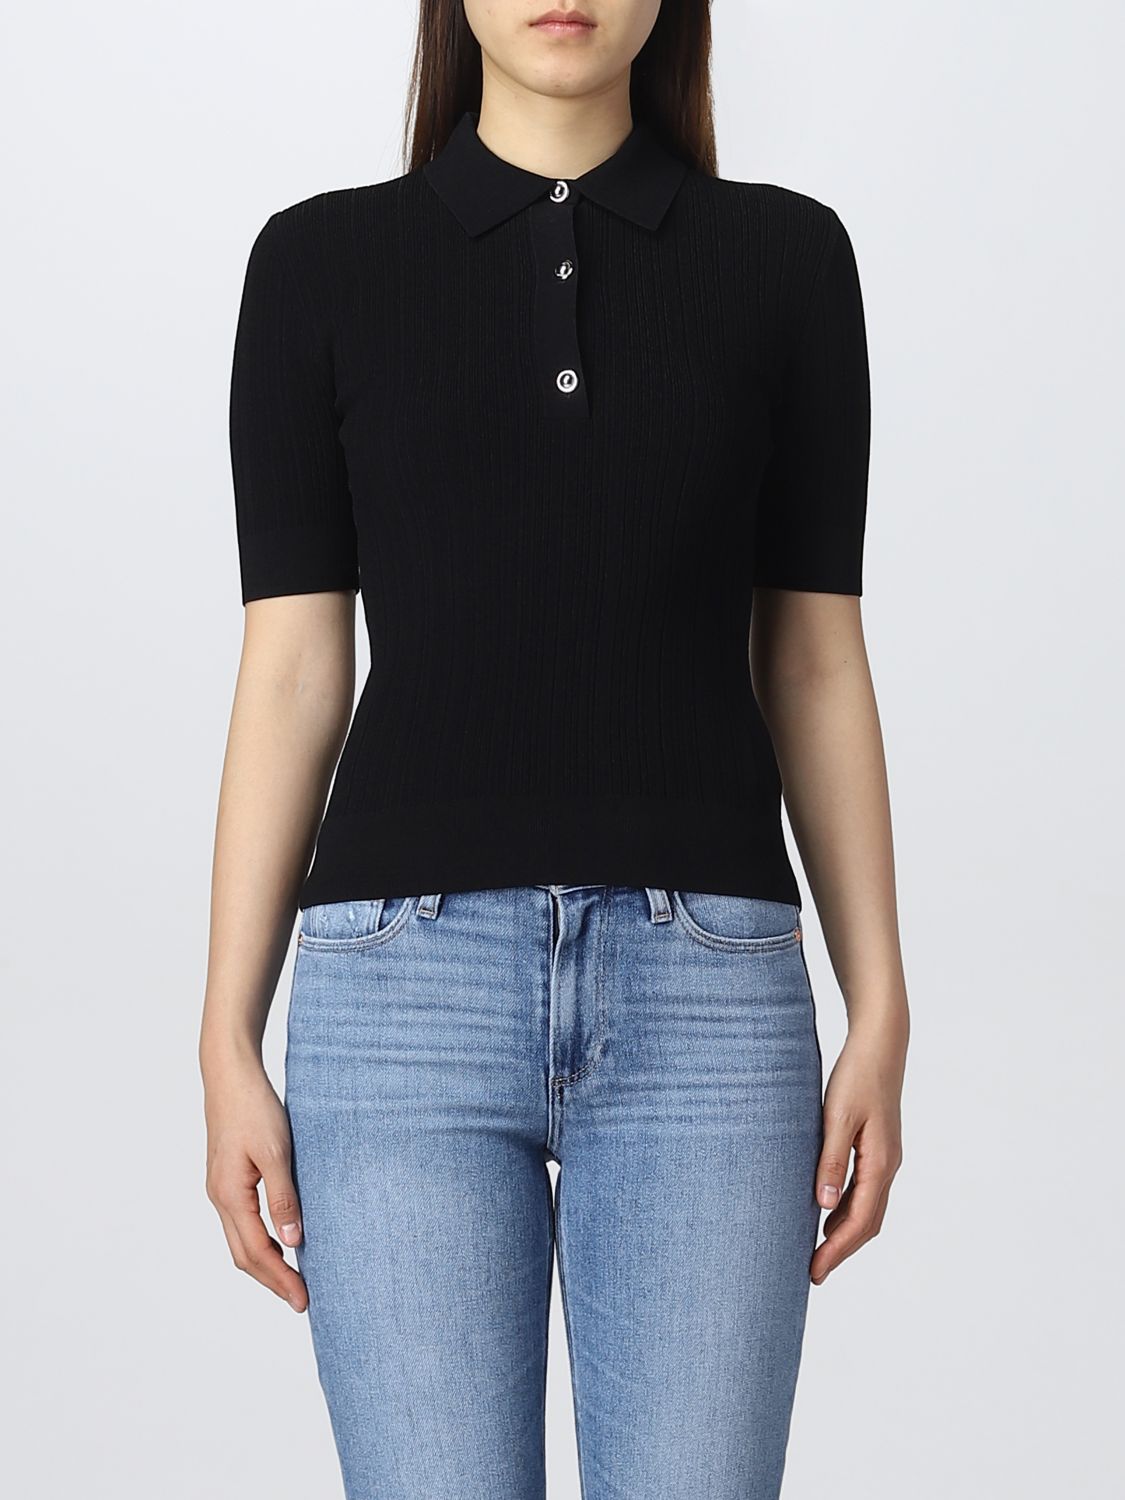 MICHAEL KORS: polo shirt for woman - Black | Michael Kors polo shirt  MS2600C33D online on 